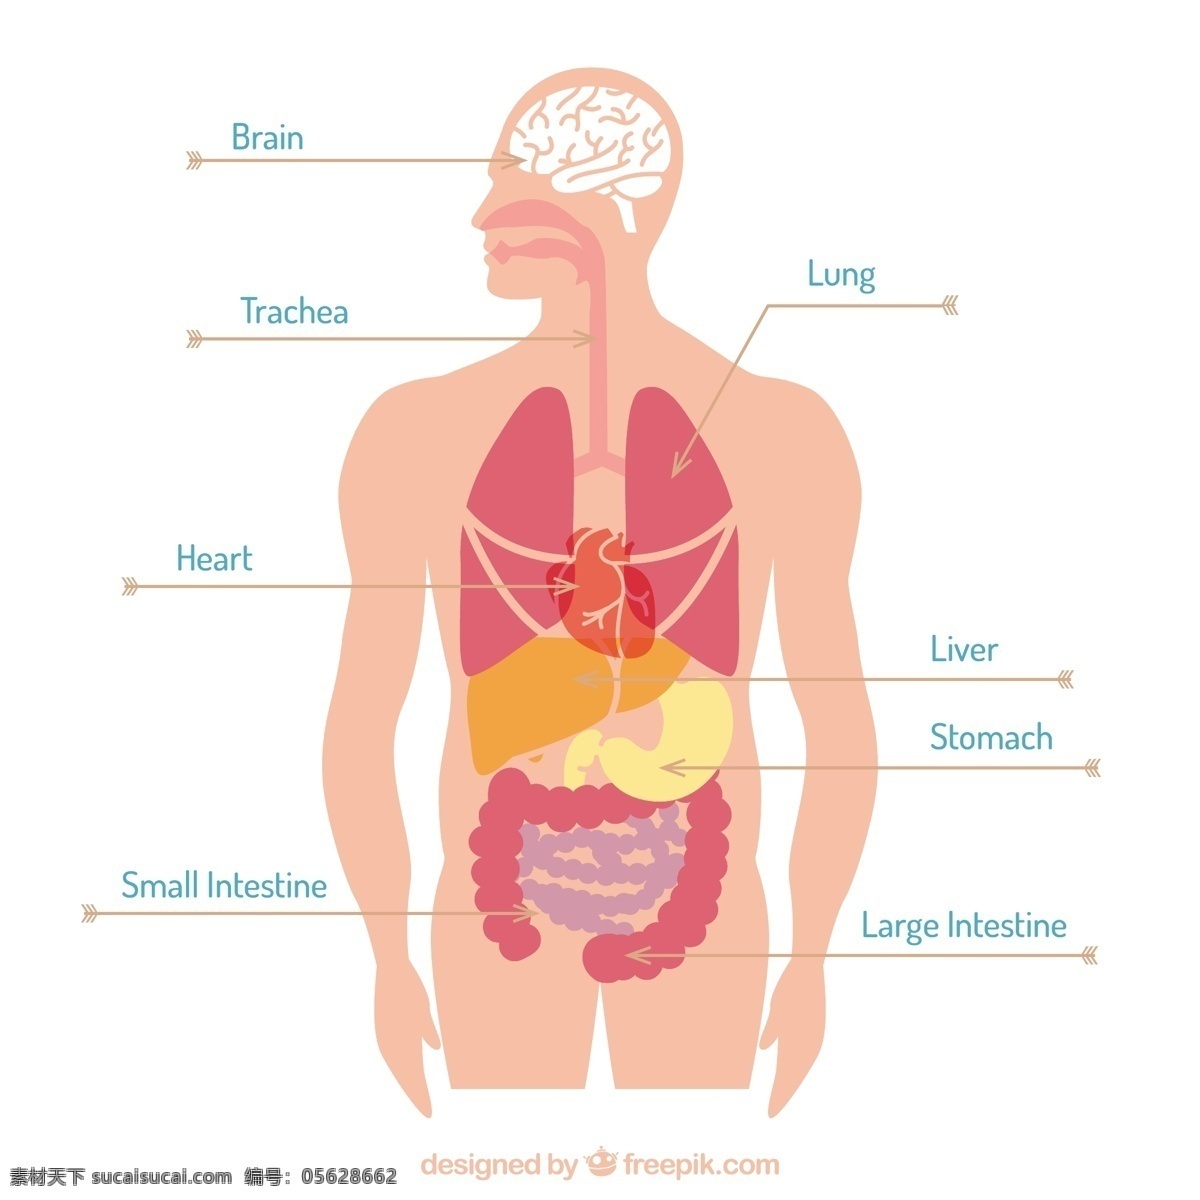 器官的身体 心 脑 平 图 人 学 平面设计 人体 系统 肺 胃 大 肝 器官 小肠 肠 呼吸 呼吸系统 白色